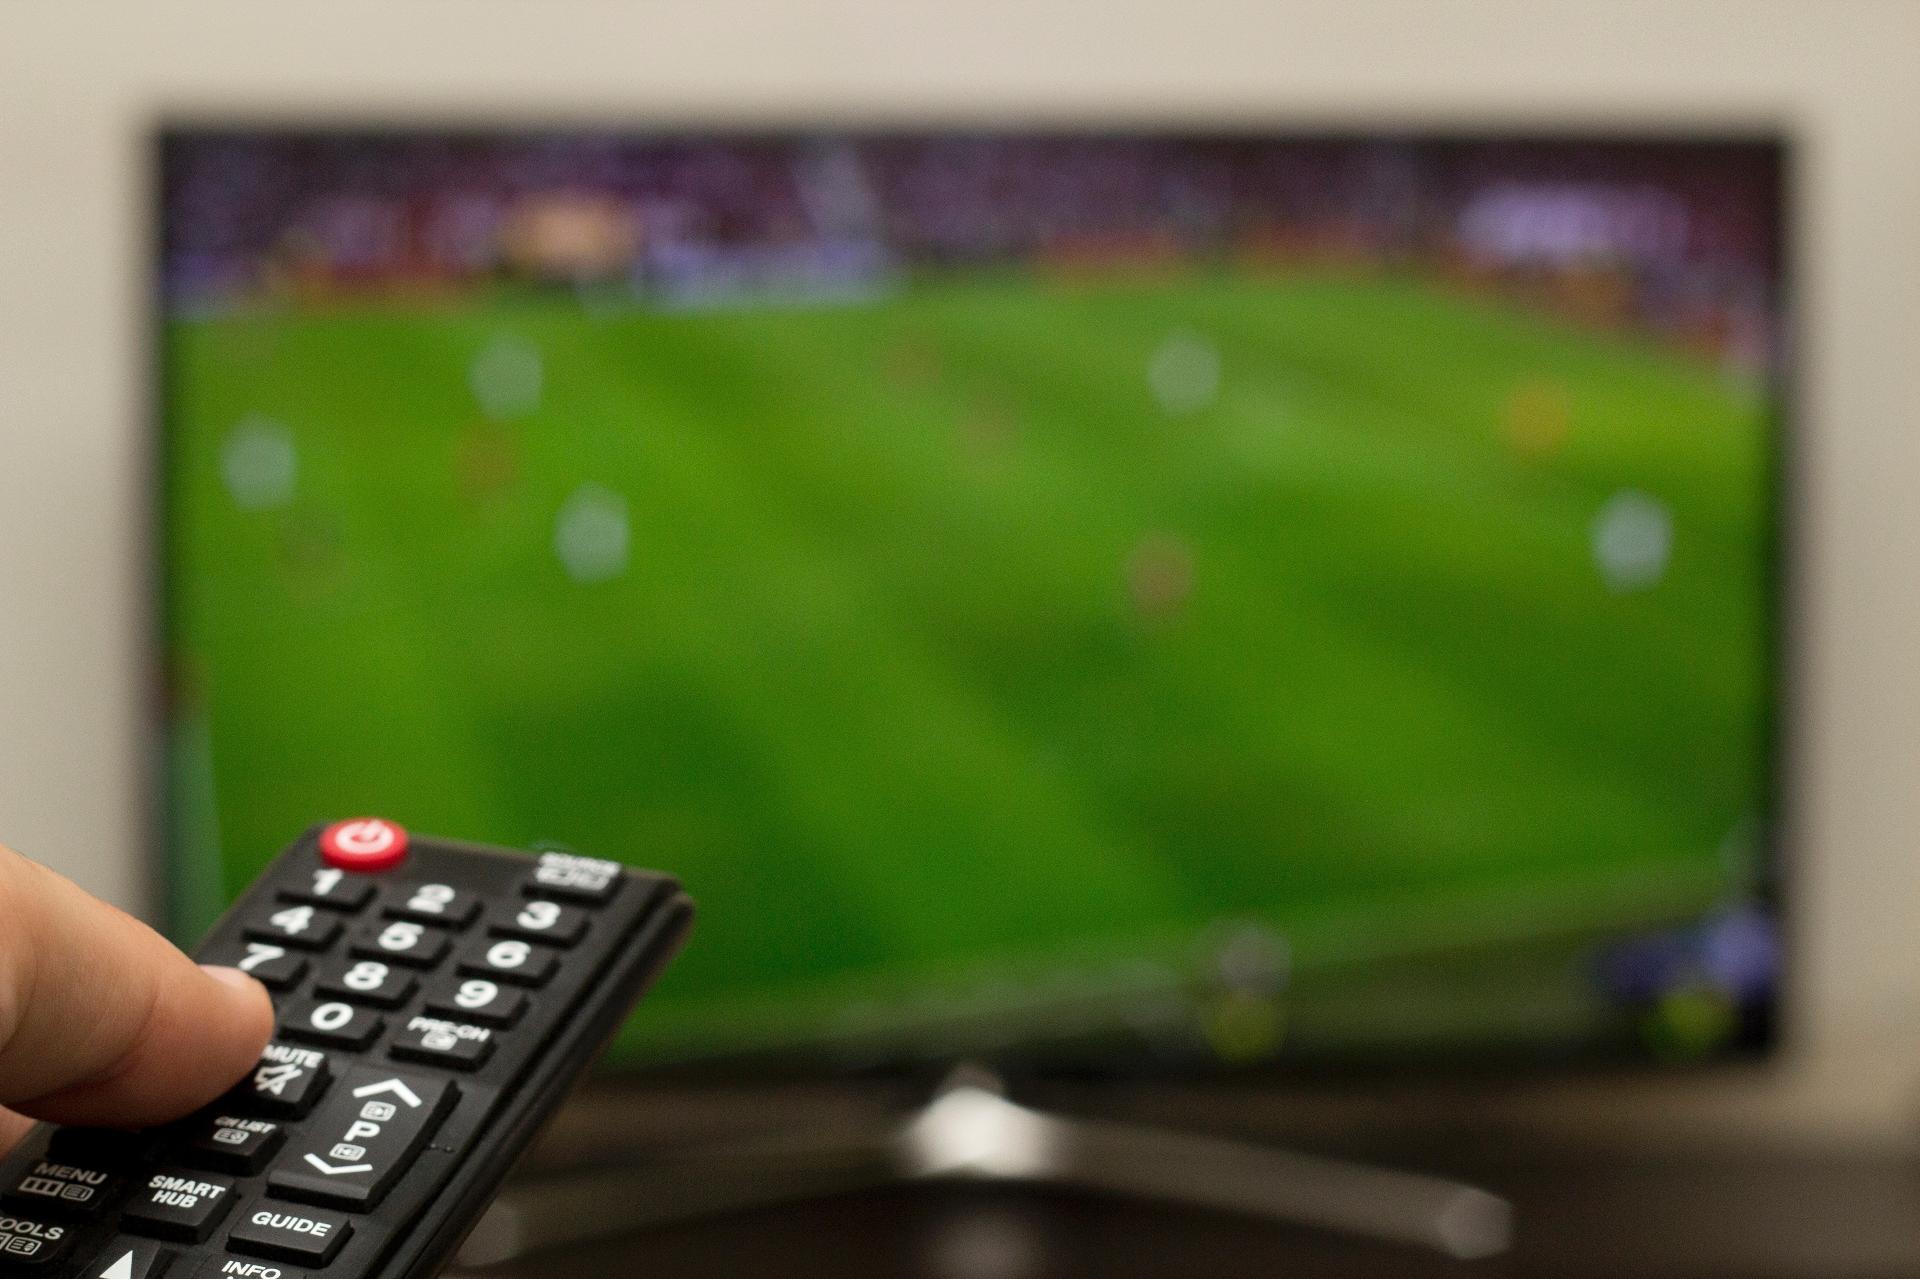 Futebol na Televisão - Futebol 365